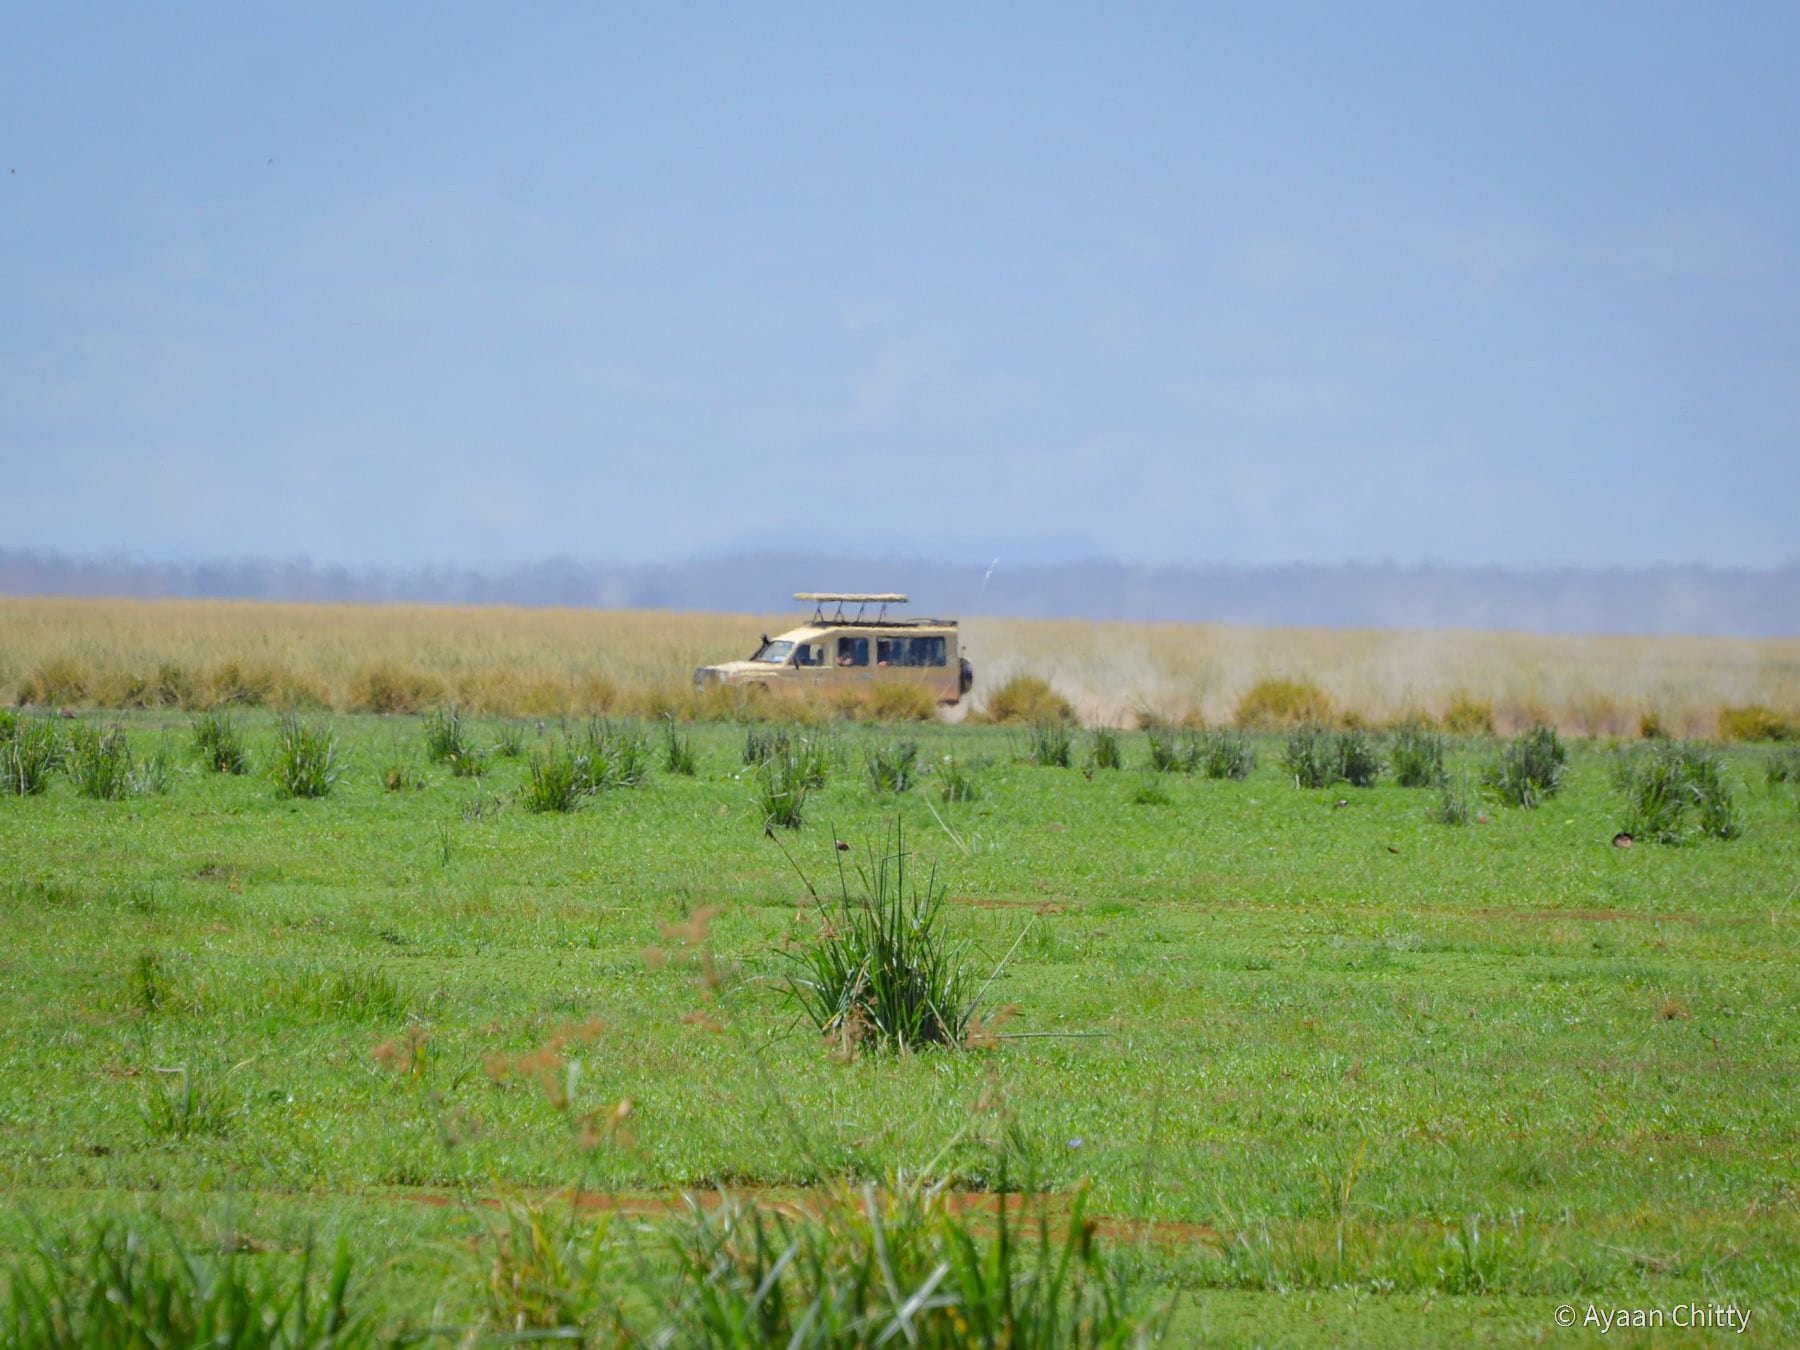 Kenya Safari Park - Game Drive in Amboseli National Park